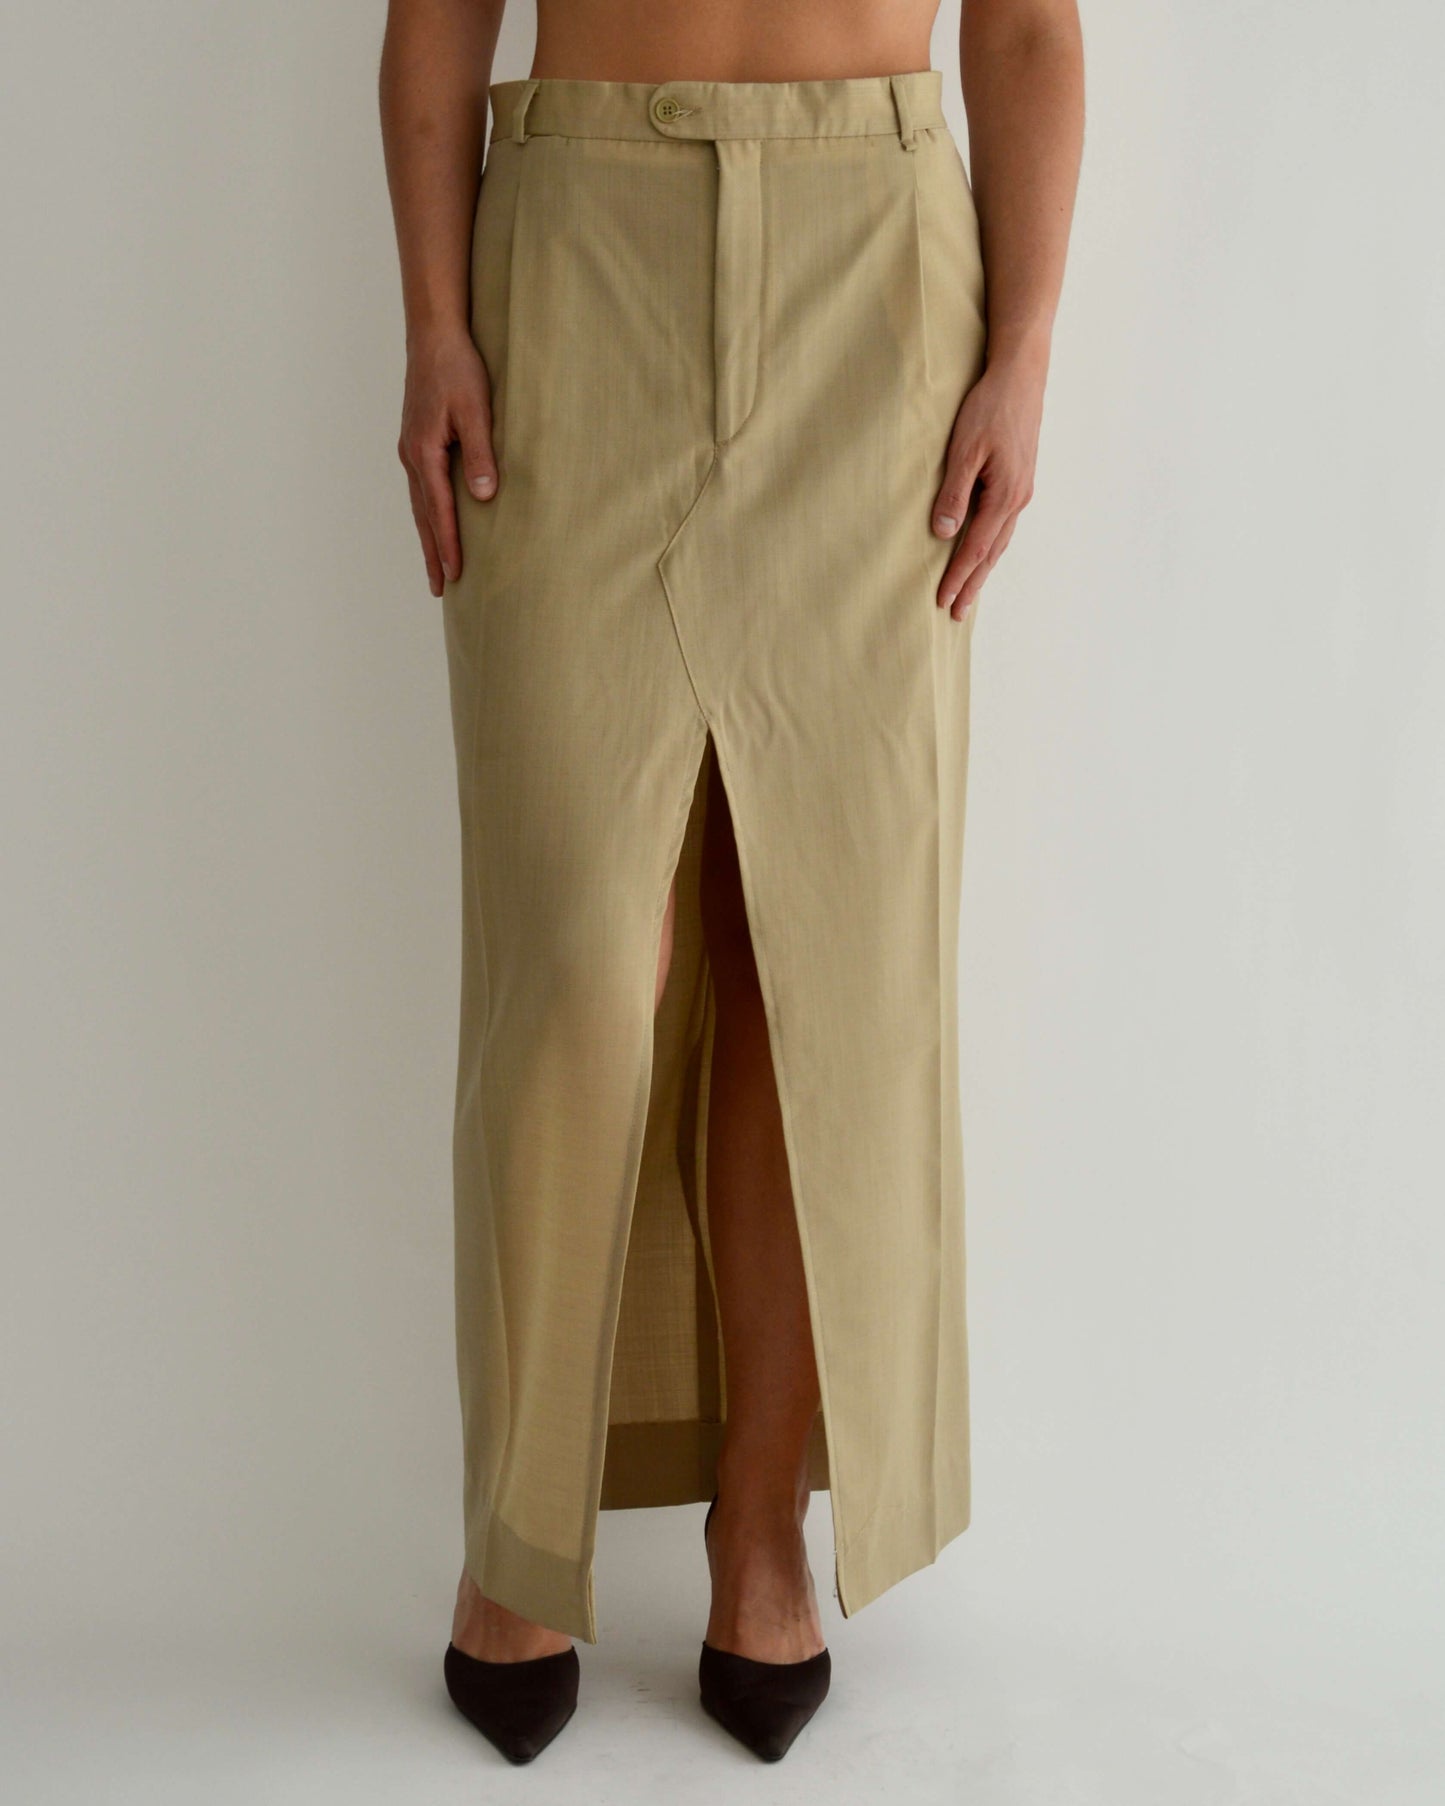 Long Skirt - Golden (M/L)